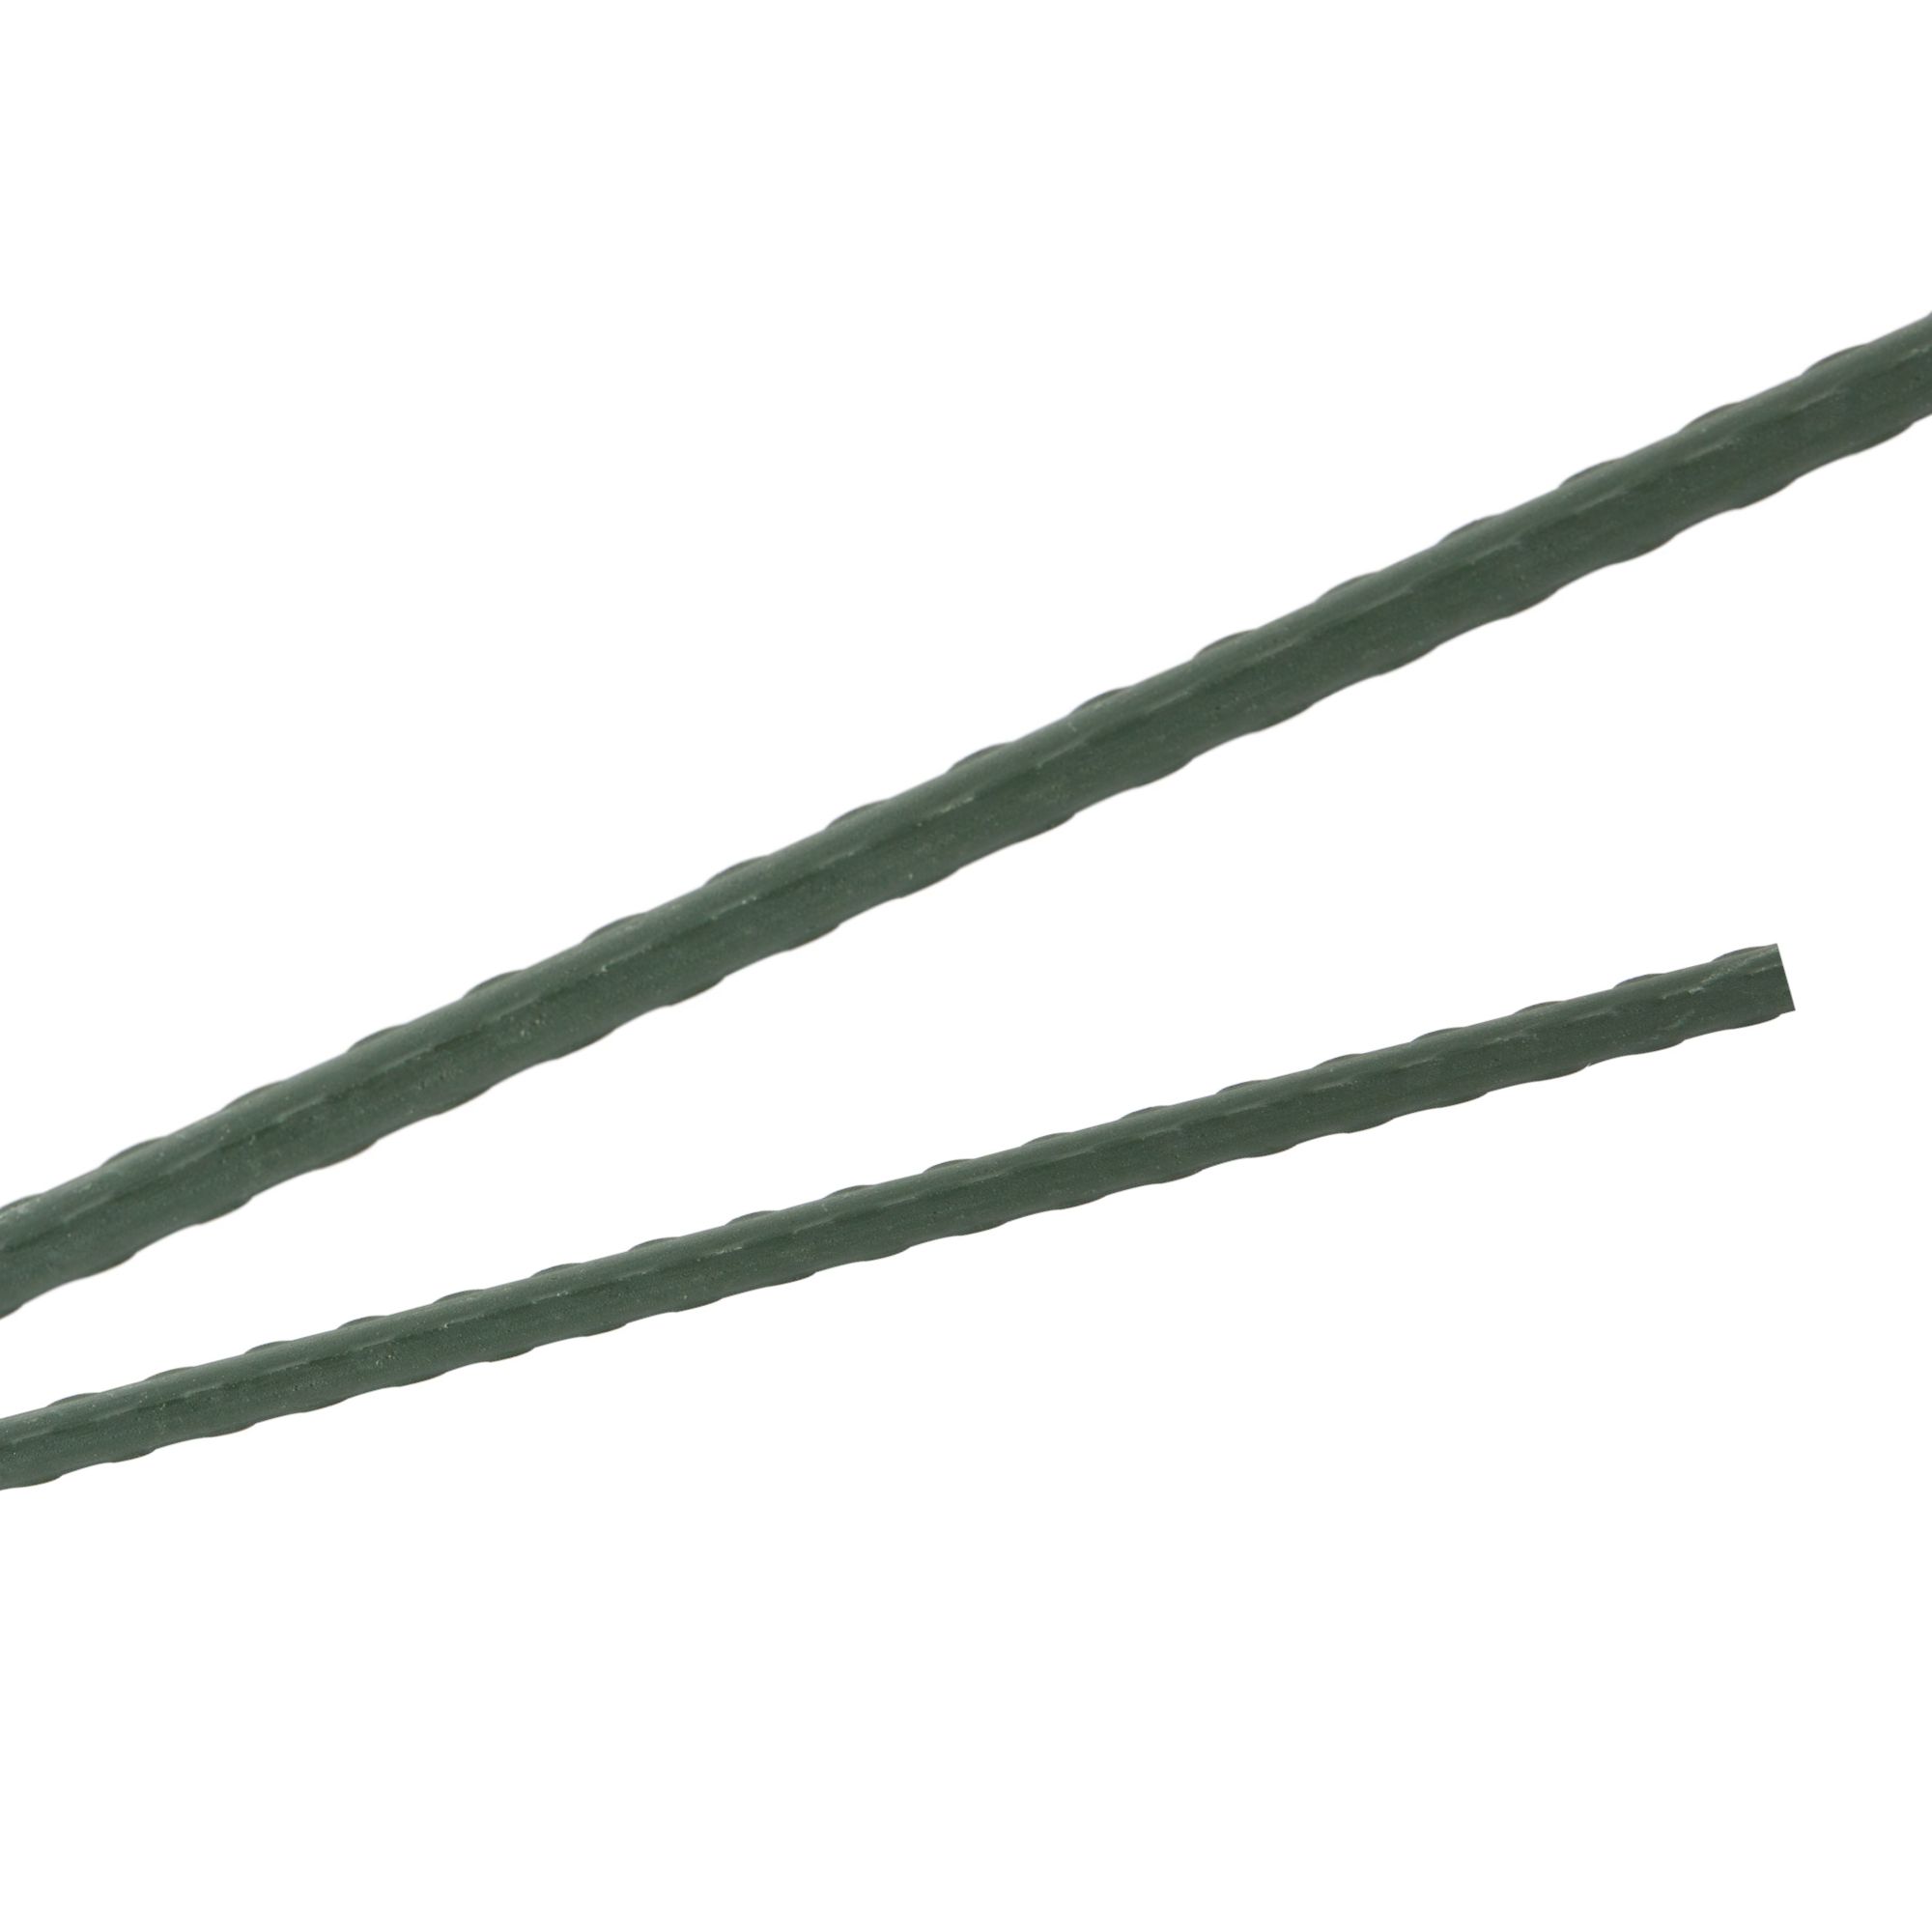 Tyč podpěrná, 16mm, 120cm, kov+PVC, zelená 0.150000 Kg GIGA Sklad20 32013 118